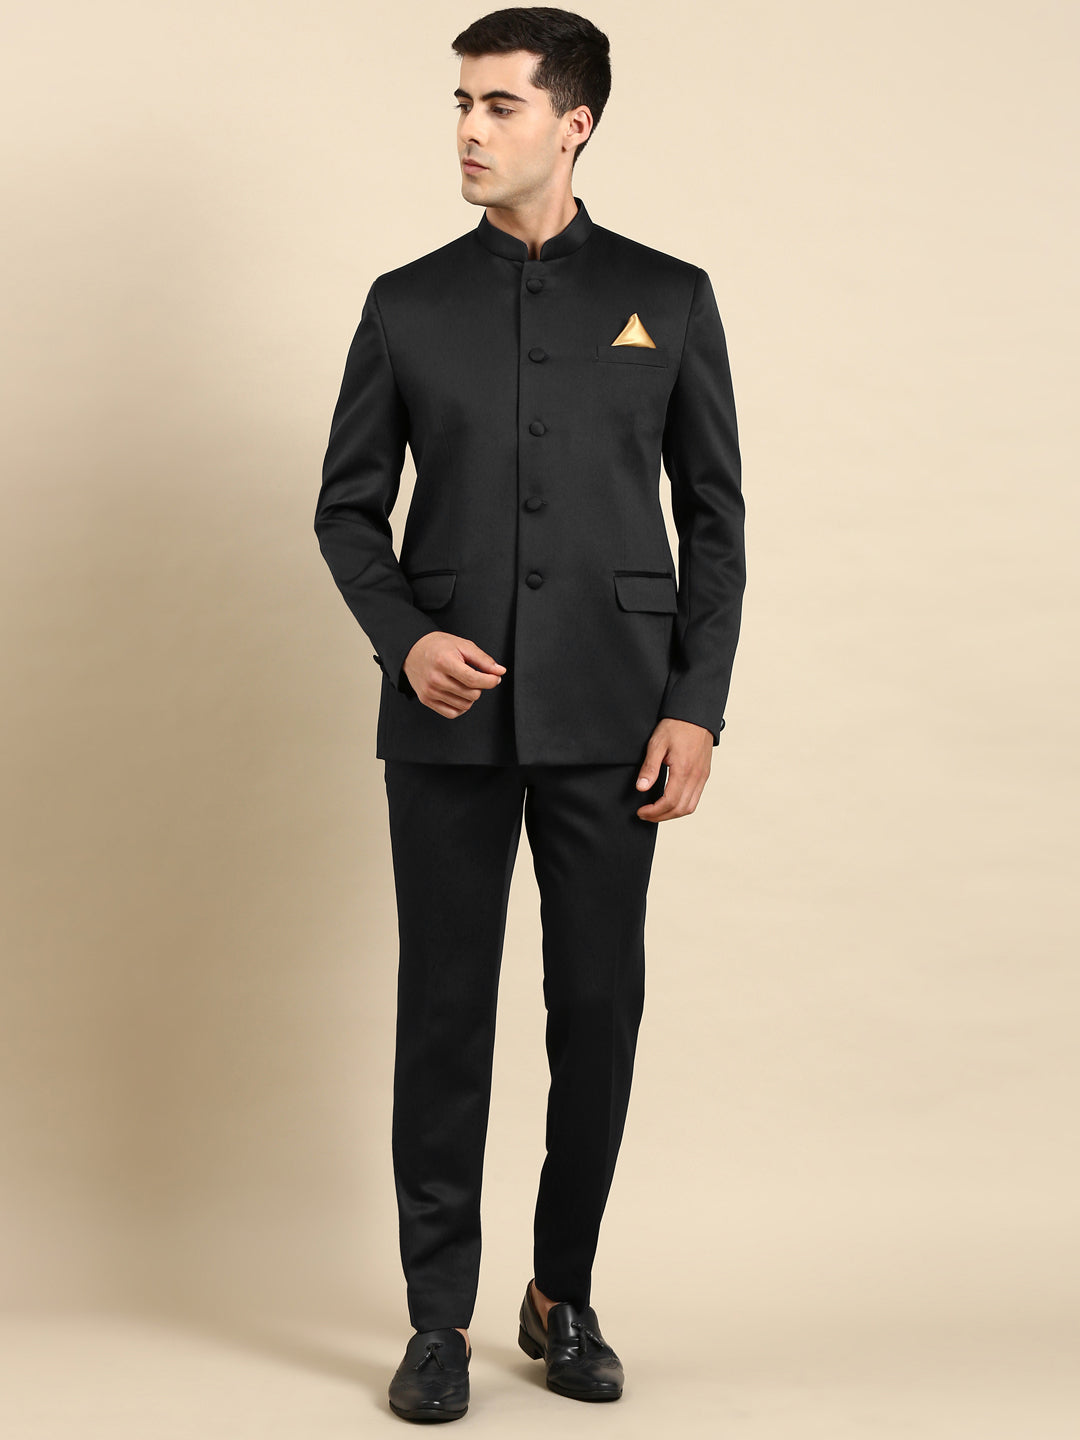 Black Bandhgala Suit